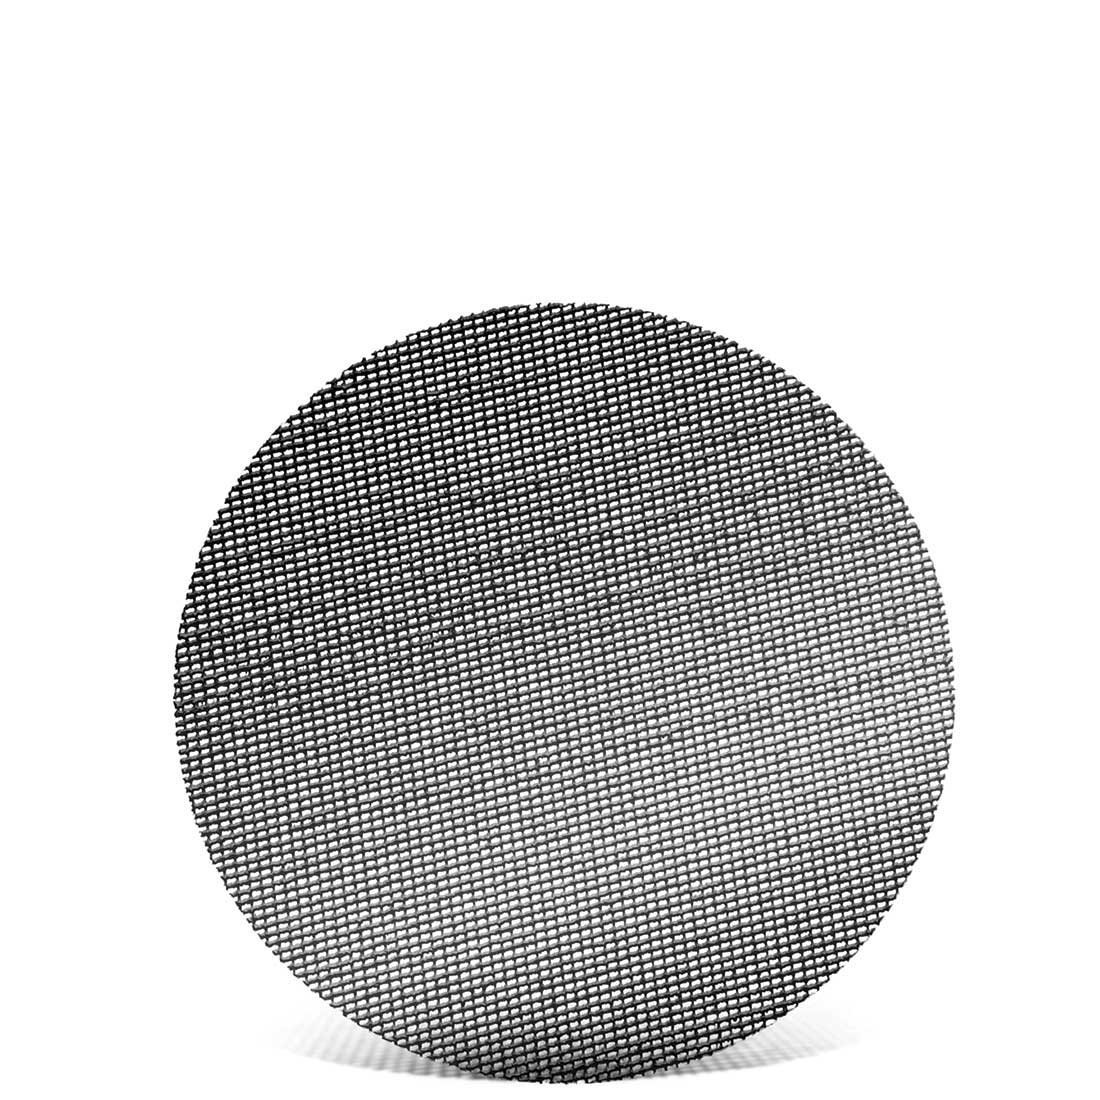 MENZER Schleifgitter für Einscheibenmaschinen, K60–180, Ø 330 mm / Gitter / Siliciumcarbid